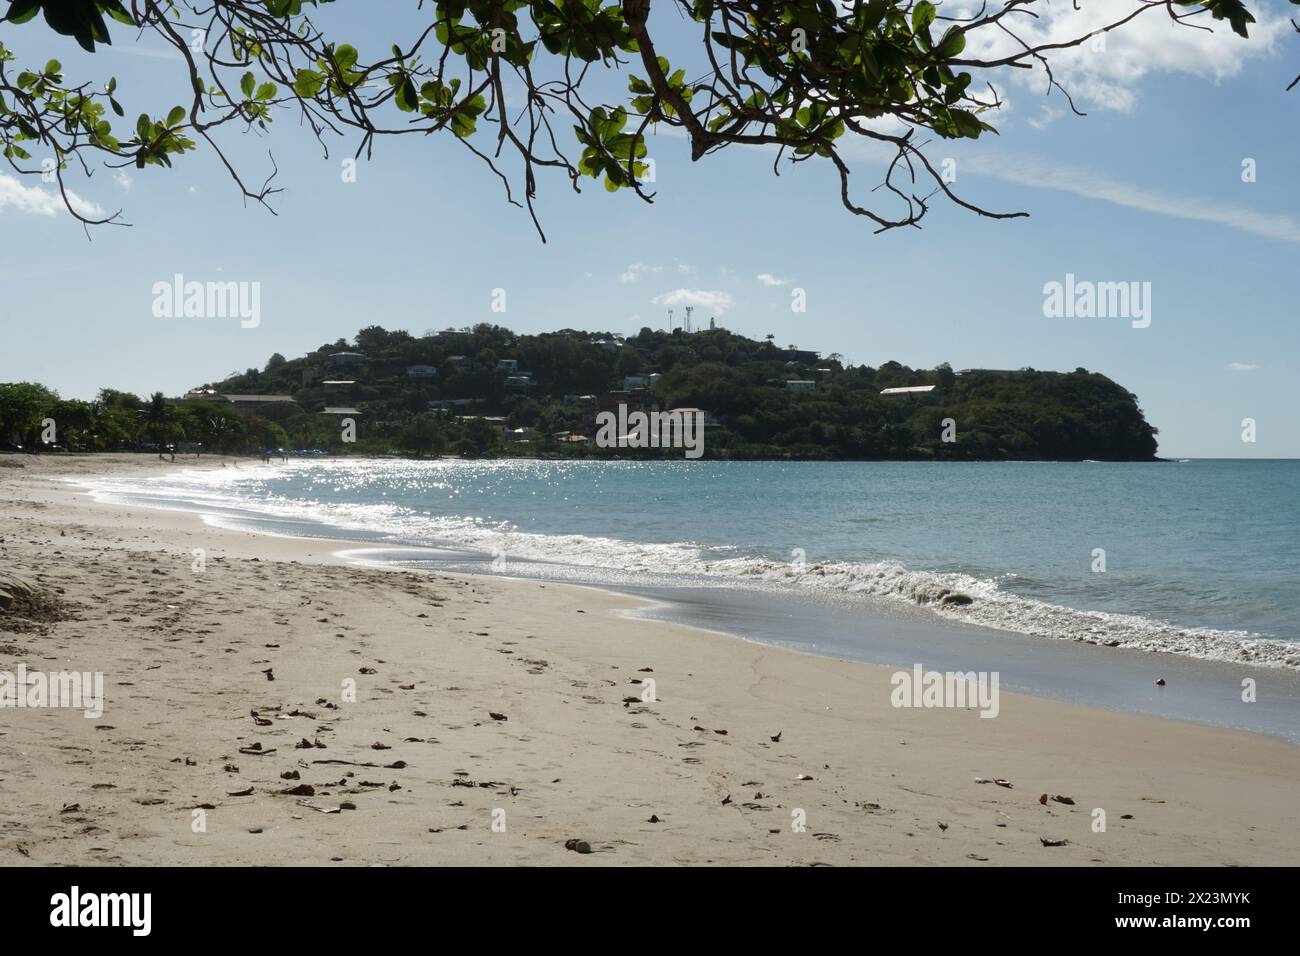 Une image romantique de la mer bleu pâle et de la plage de sable visible sous une branche d'arbre feuillu sur la côte de l'île caribéenne de Sainte-Lucie. Banque D'Images